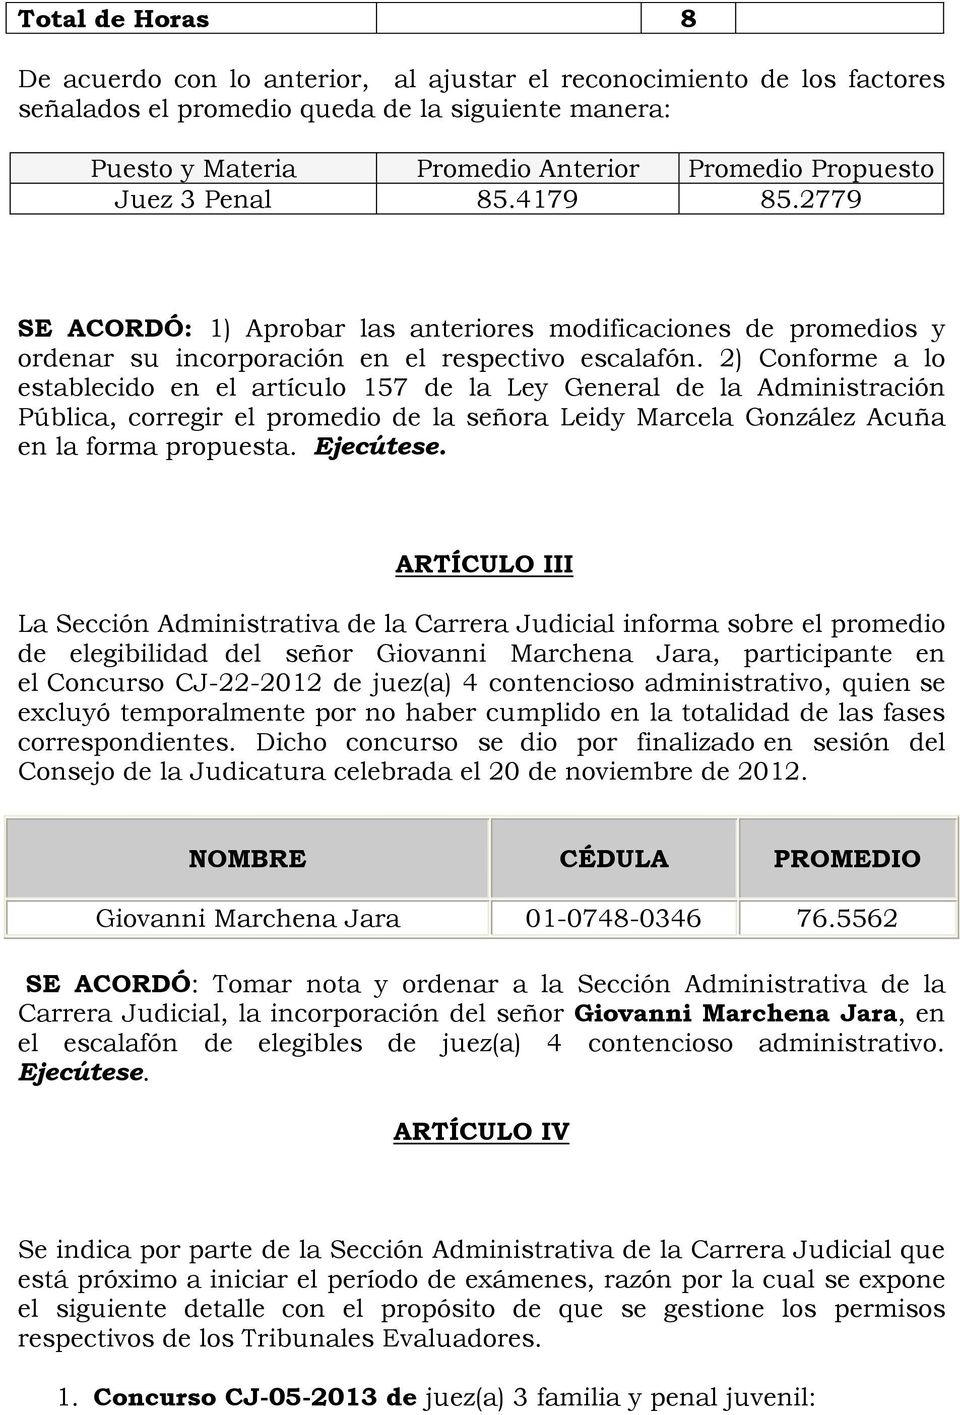 2) Conforme a lo establecido en el artículo 157 de la Ley General de la Administración Pública, corregir el promedio de la señora Leidy Marcela González Acuña en la forma propuesta. Ejecútese.